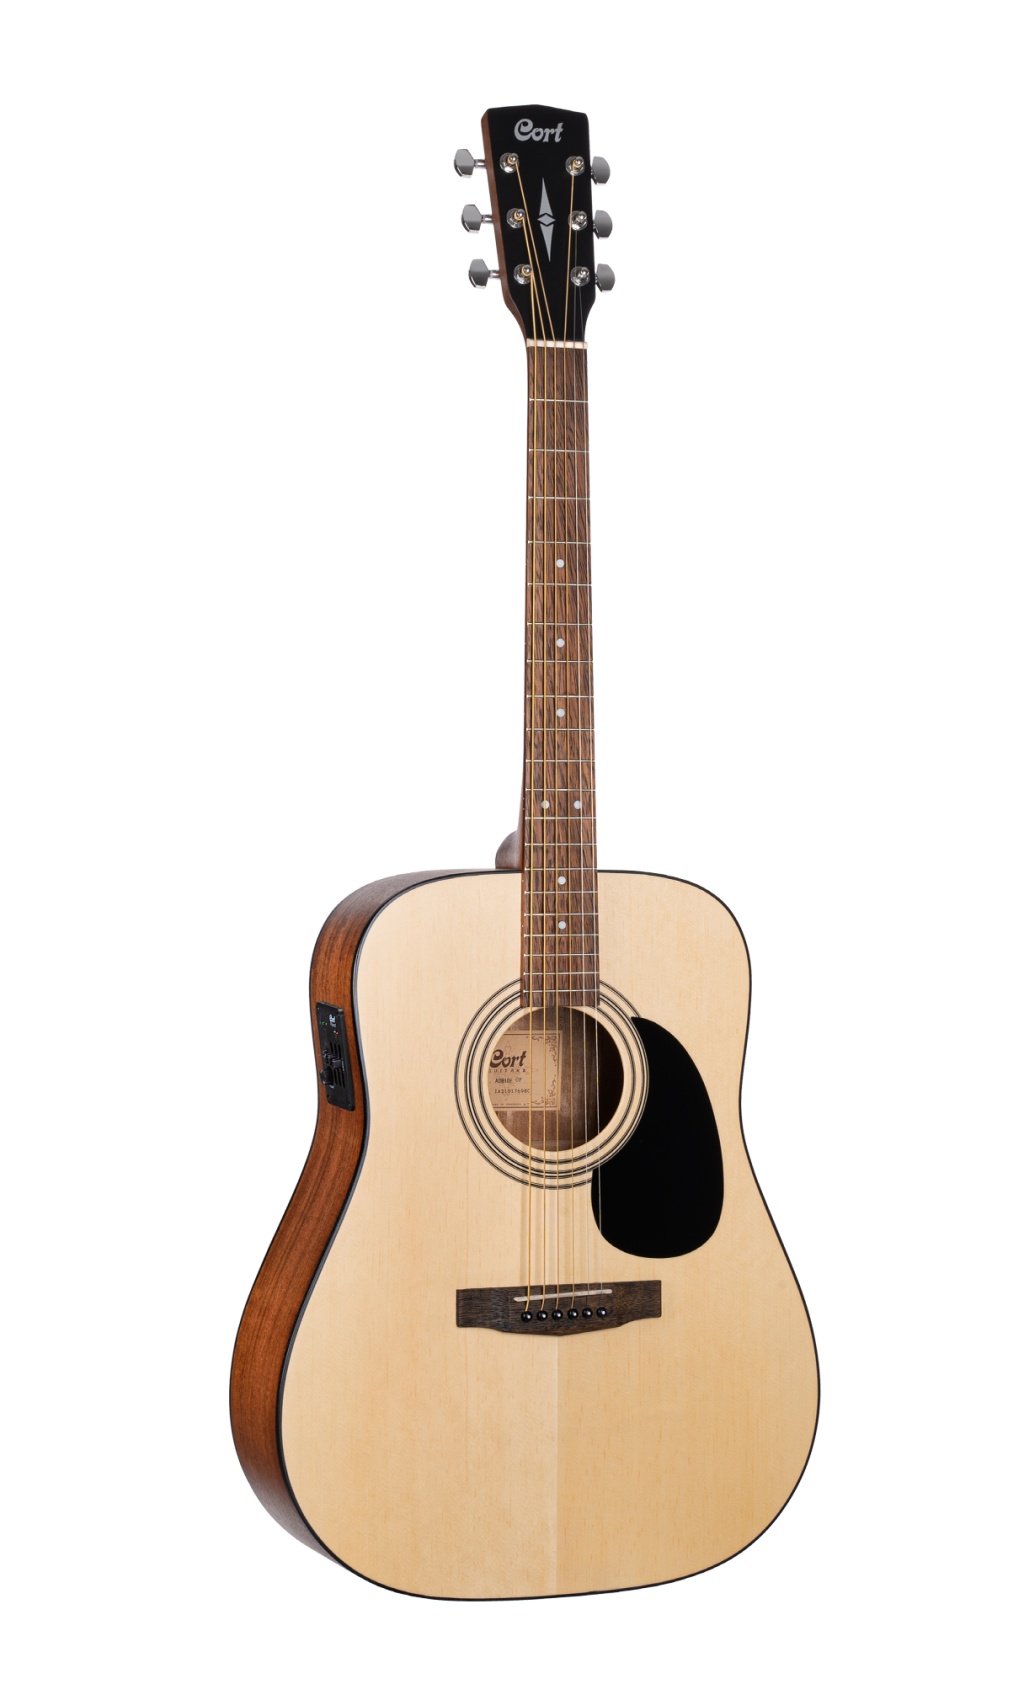 CORT AD810E-WBAG-OP Standard Series Электро-акустическая гитара, цвет натуральный, с чехлом